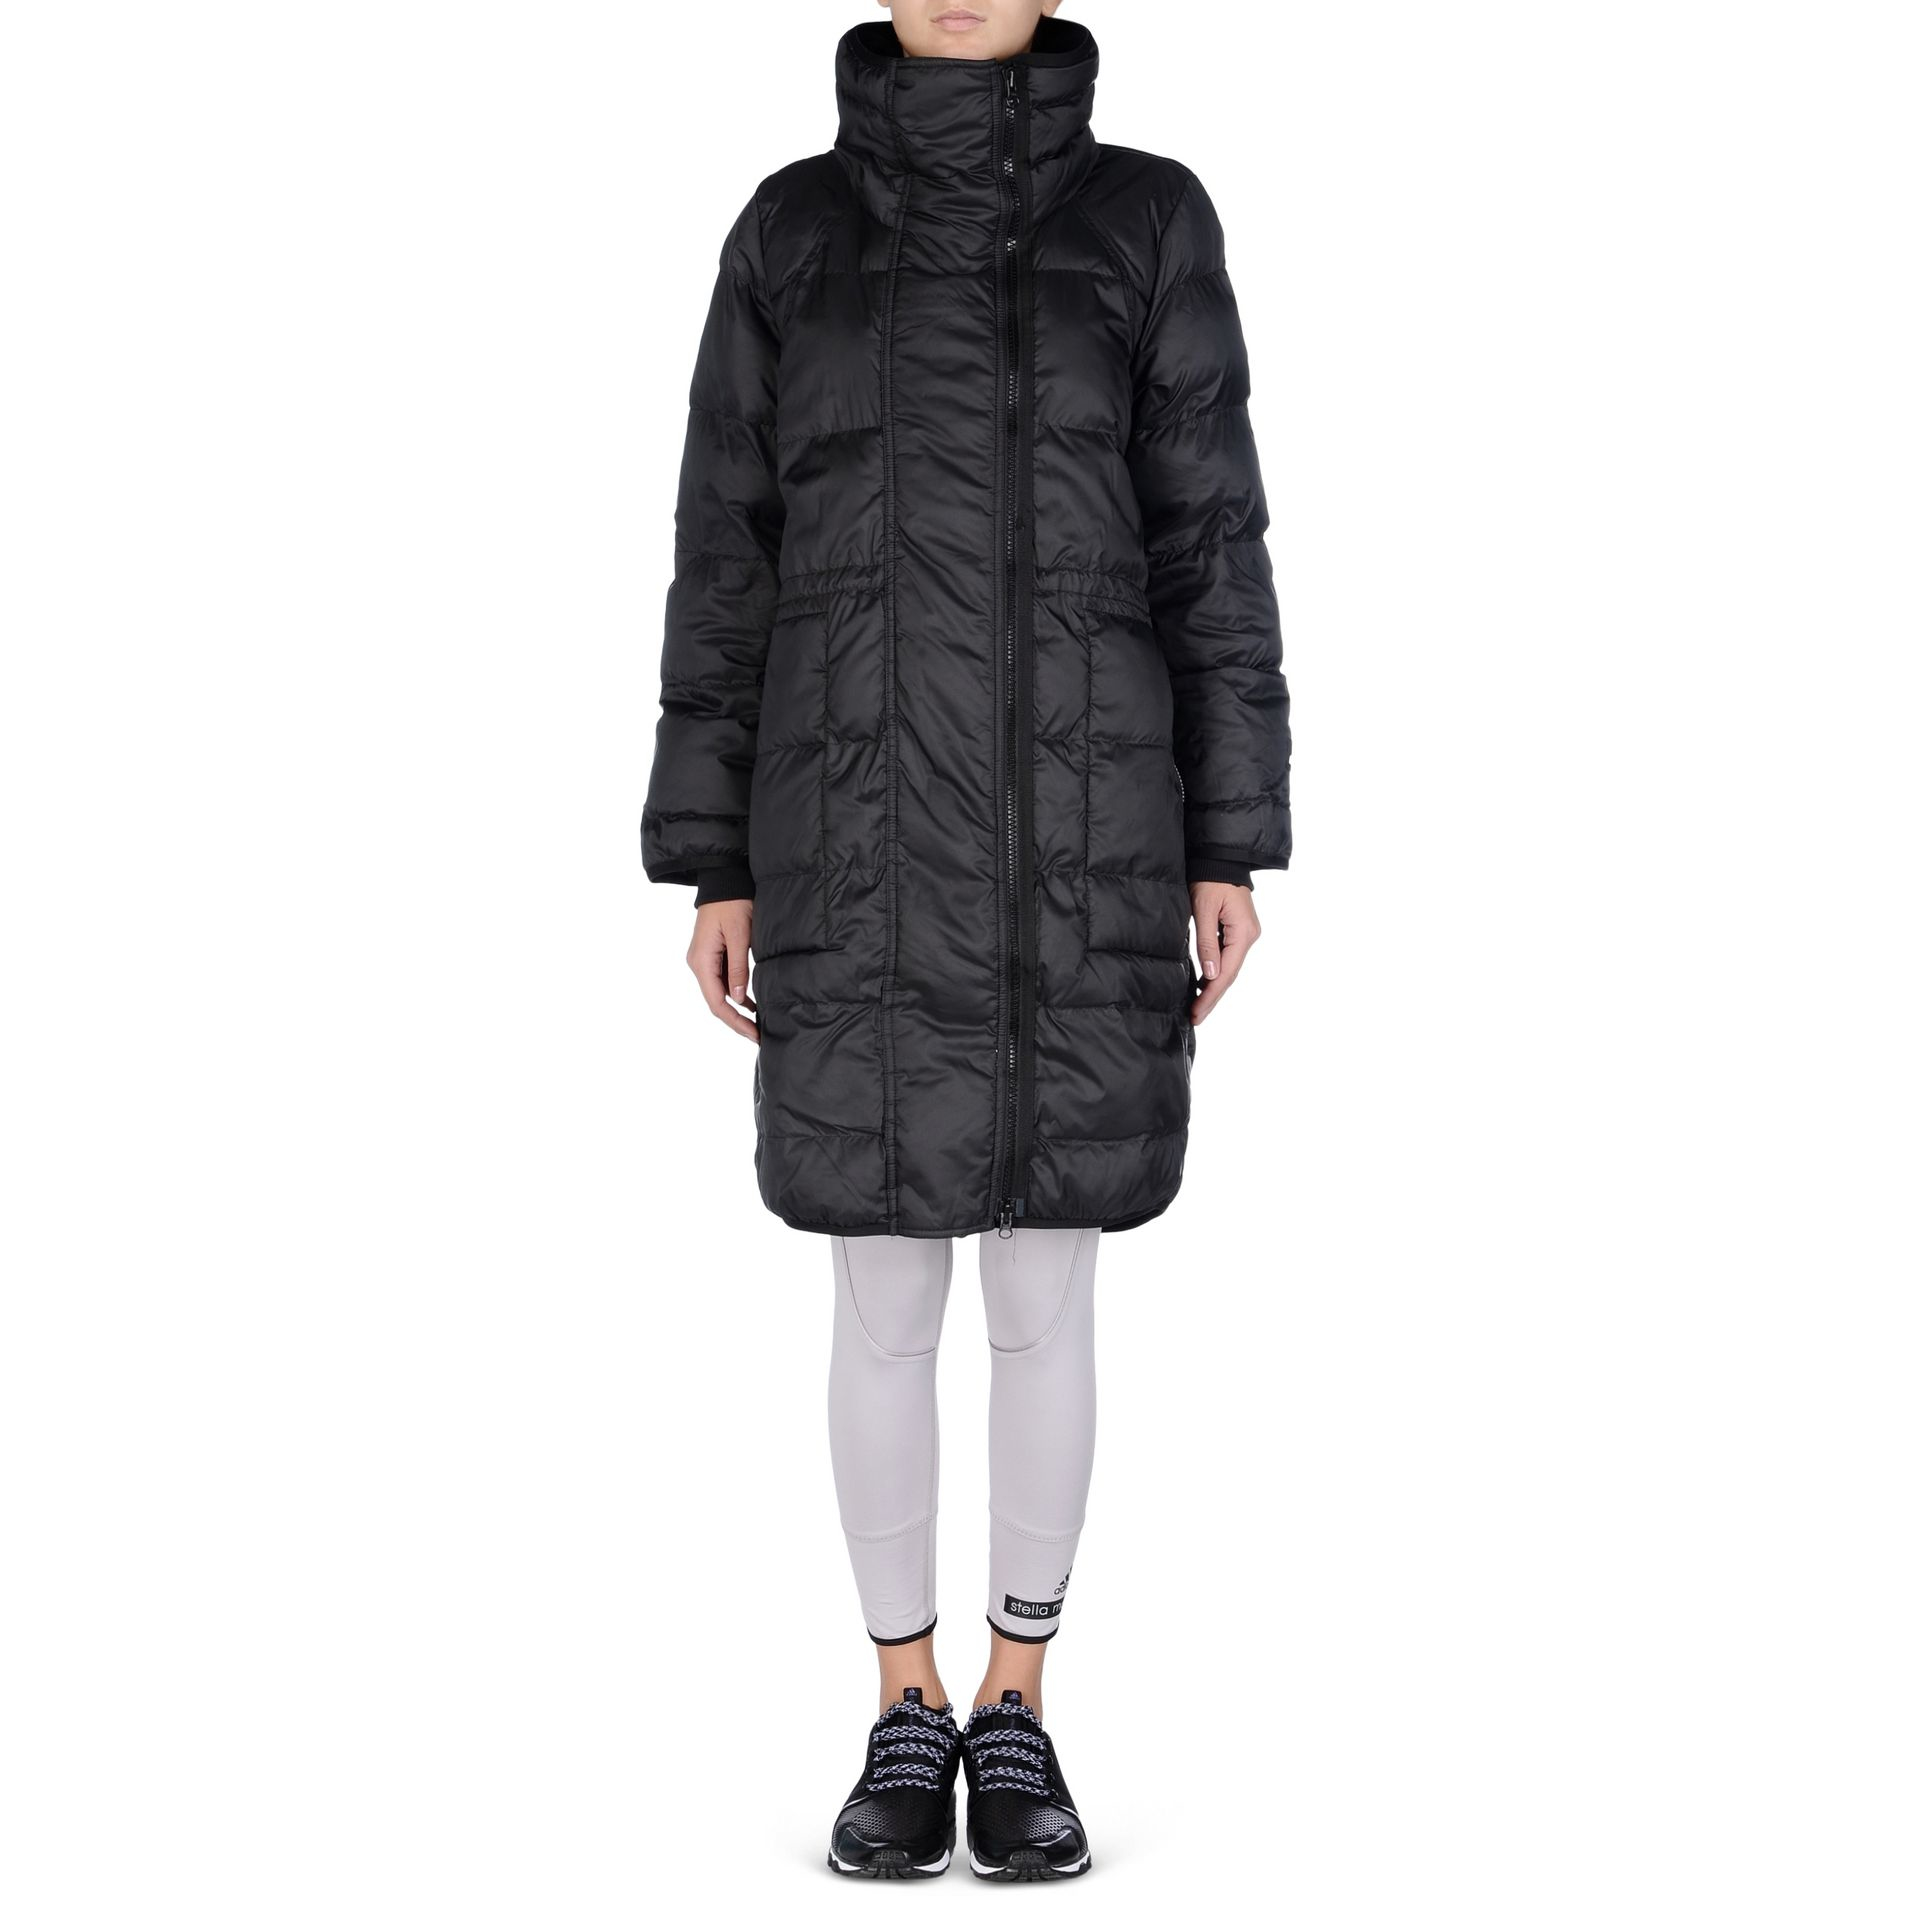 Lyst - Adidas By Stella Mccartney Essentials Long Padded Jacket in Black